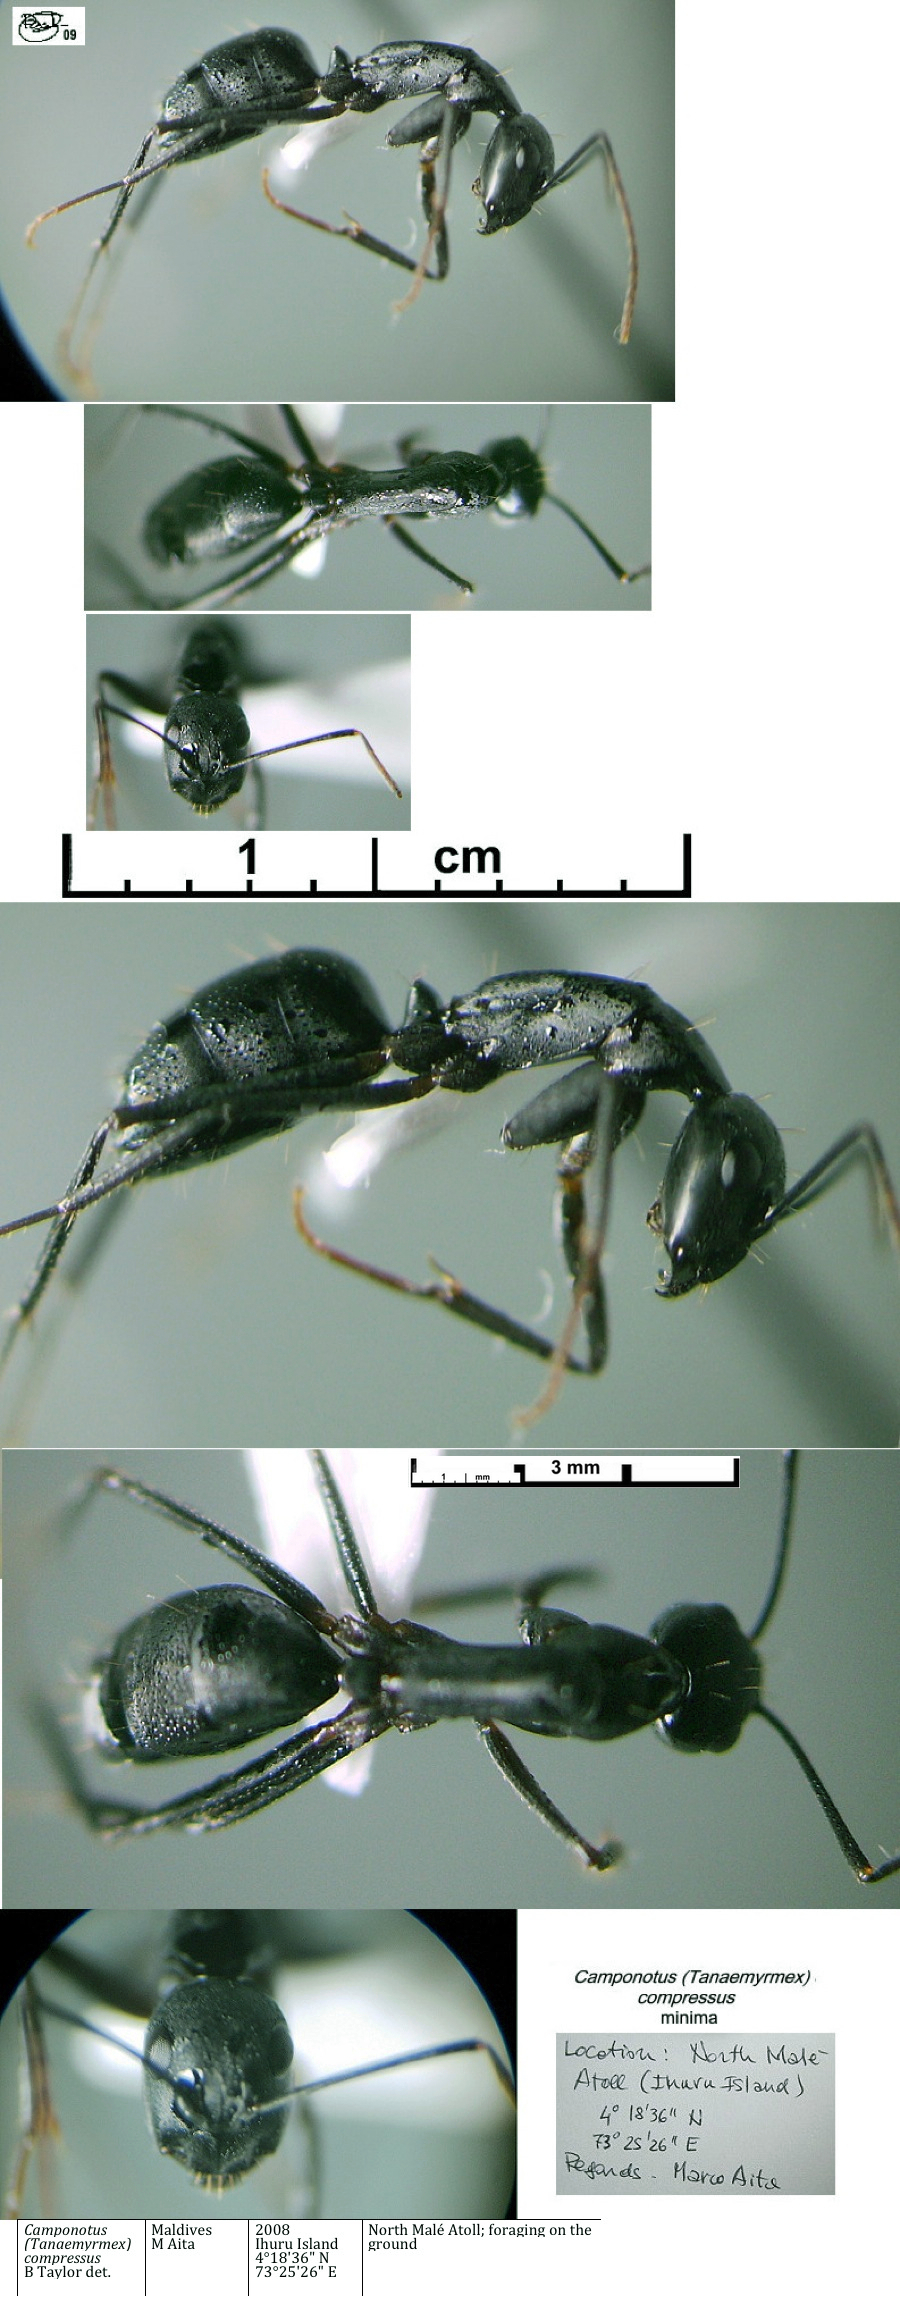 {Camponotus compressus minima}